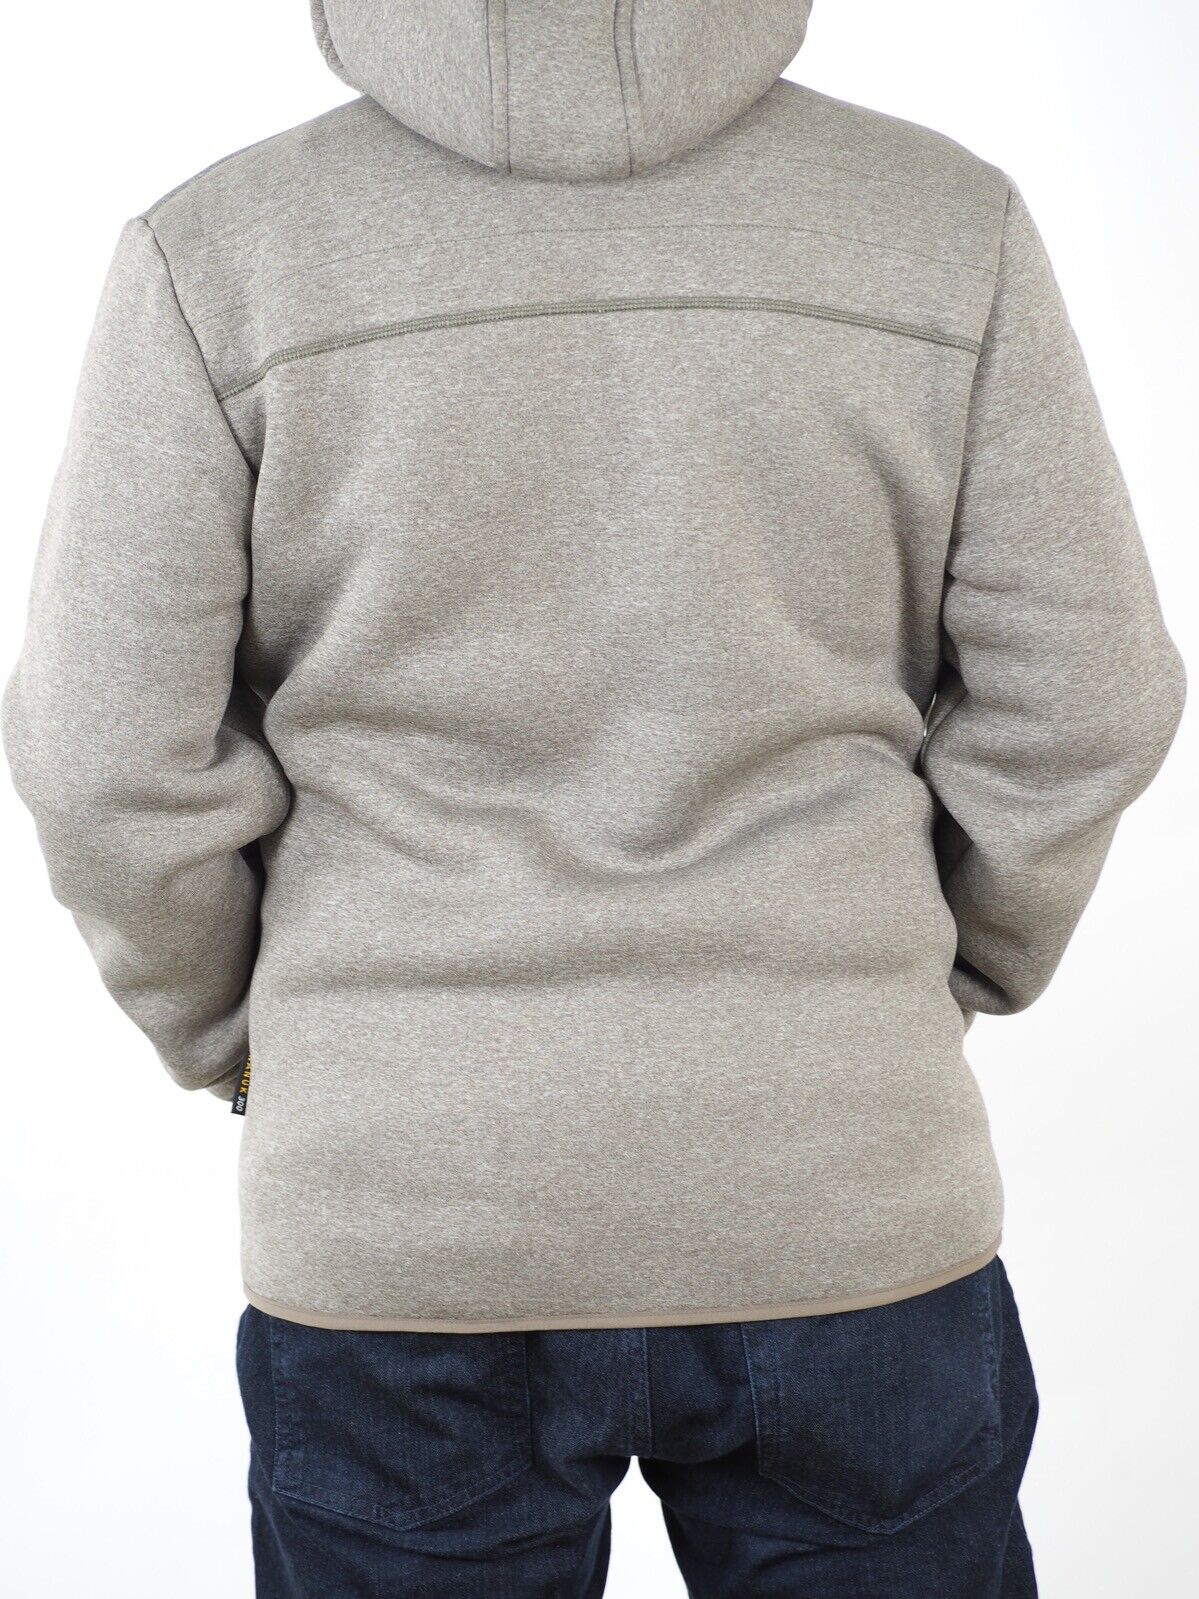 Mens Jack Wolfskin Terra Nova 1703001 Siltstone Warm Zip Up Hooded Sweatshirt - London Top Style